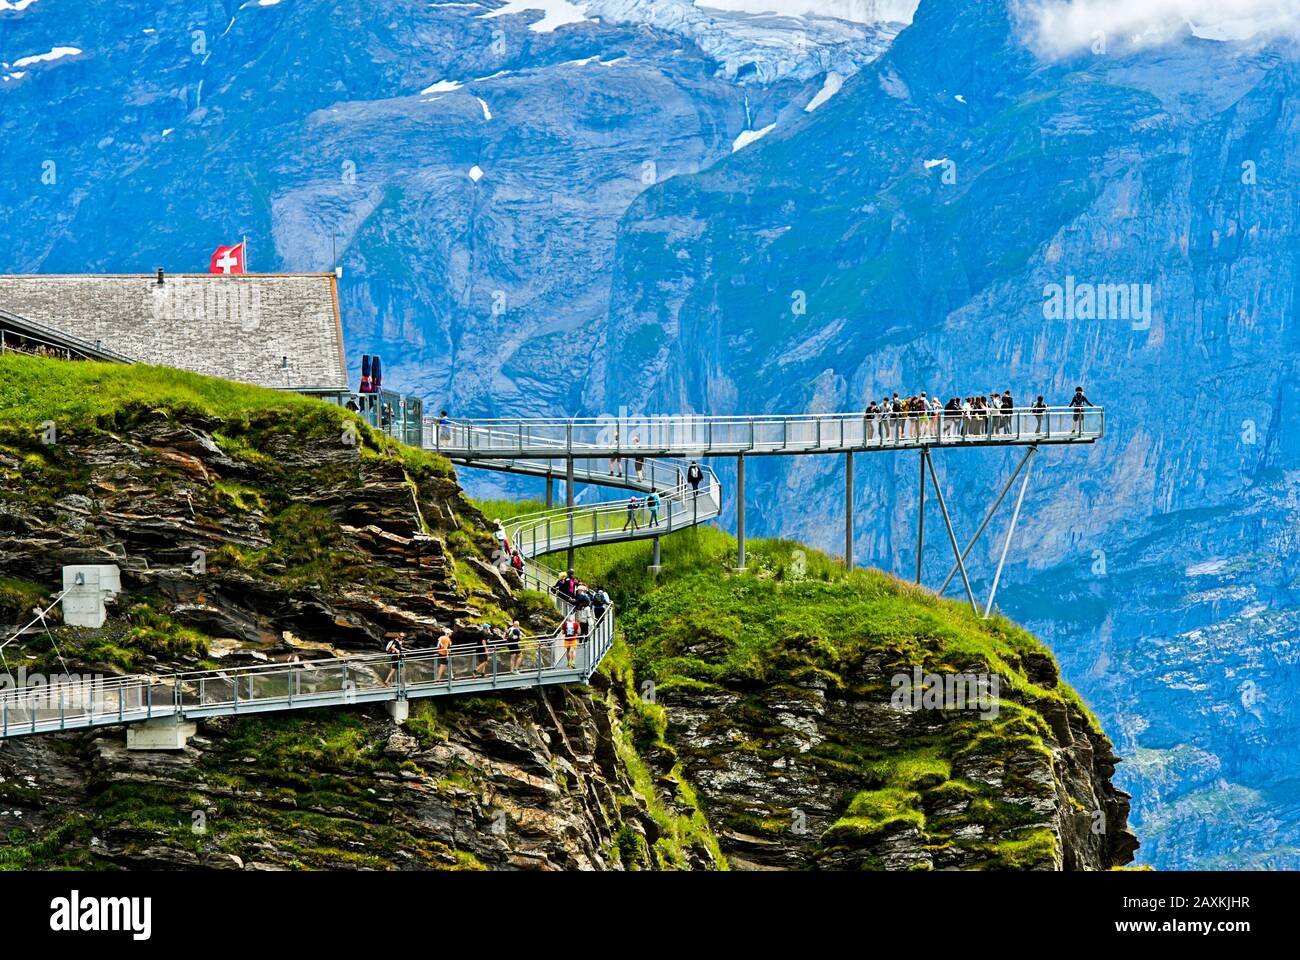 Sentier de montagne et plate-forme First Cliff Walk présenté par Tissot contre les parois rocheuses des Alpes bernoises, Grindelwald, Oberland bernois, Suisse Banque D'Images